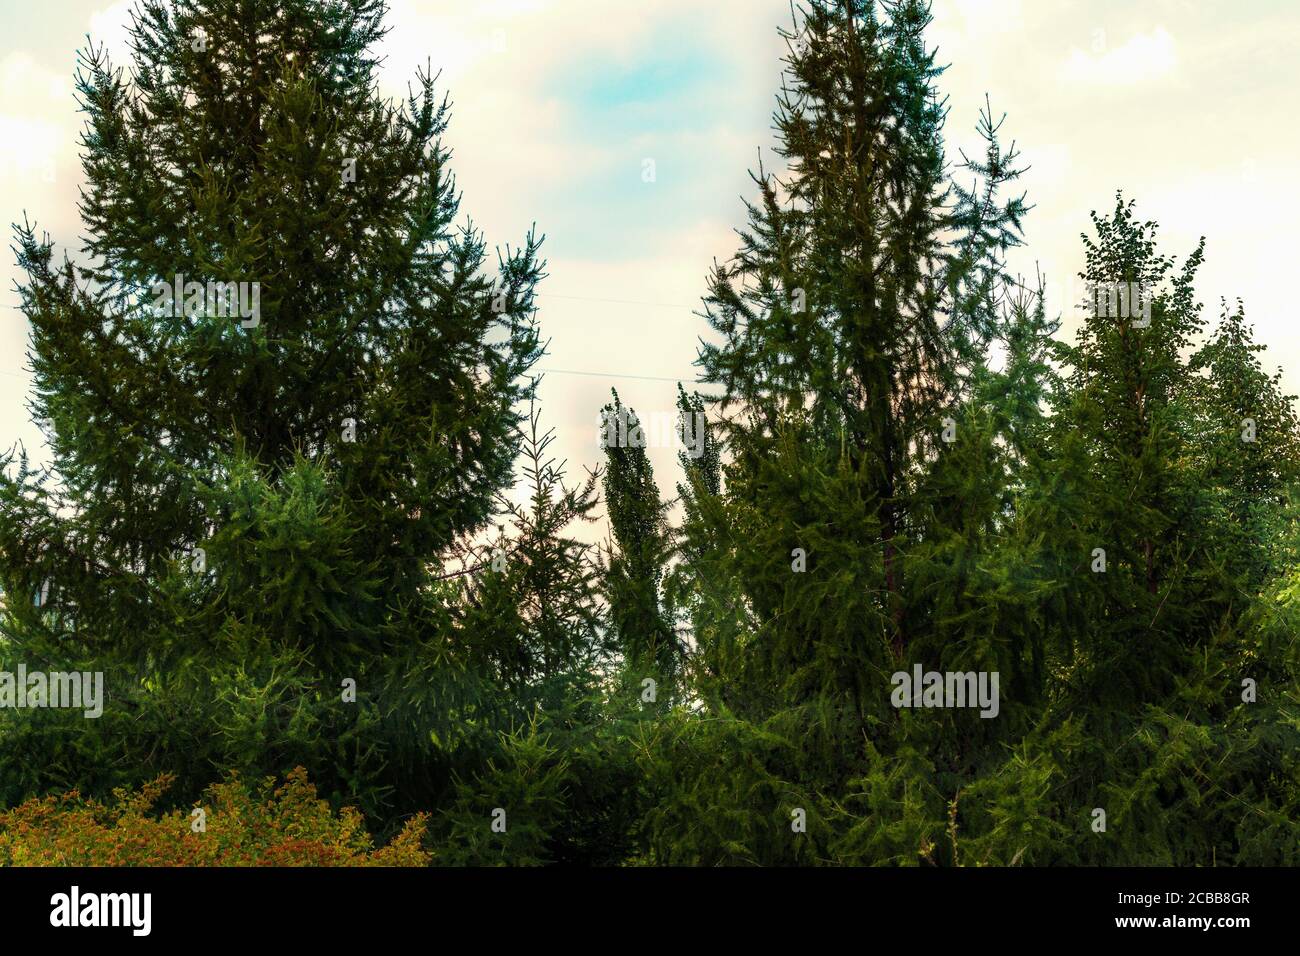 Bellezza in natura, le cime dei thuvlin alberi sul cielo. La foto è stata scattata nel Giardino Botanico di Chelyabinsk. Foto Stock